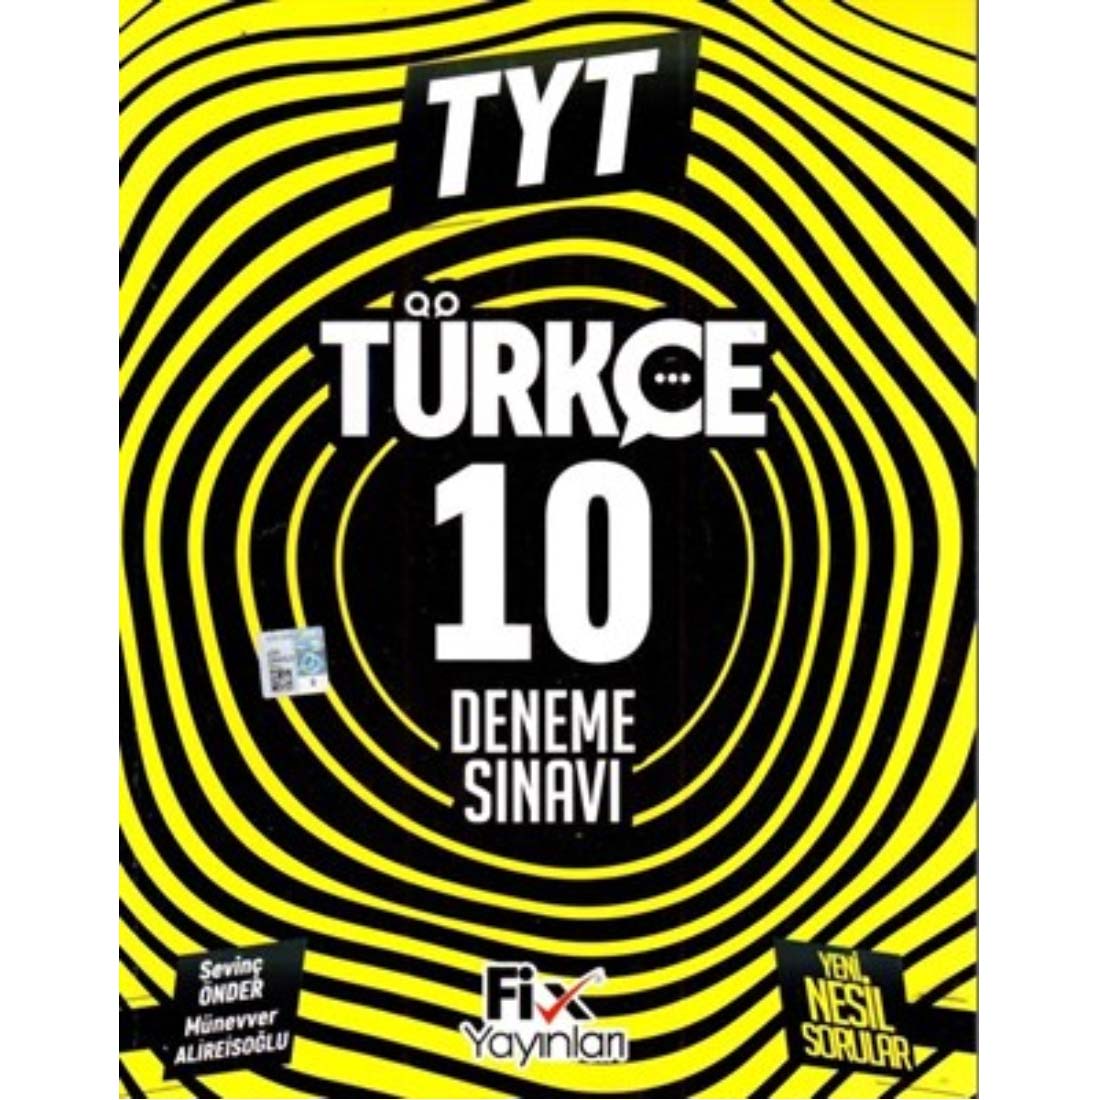 TYT Türkçe 10 Denemeleri Fix Yayınları